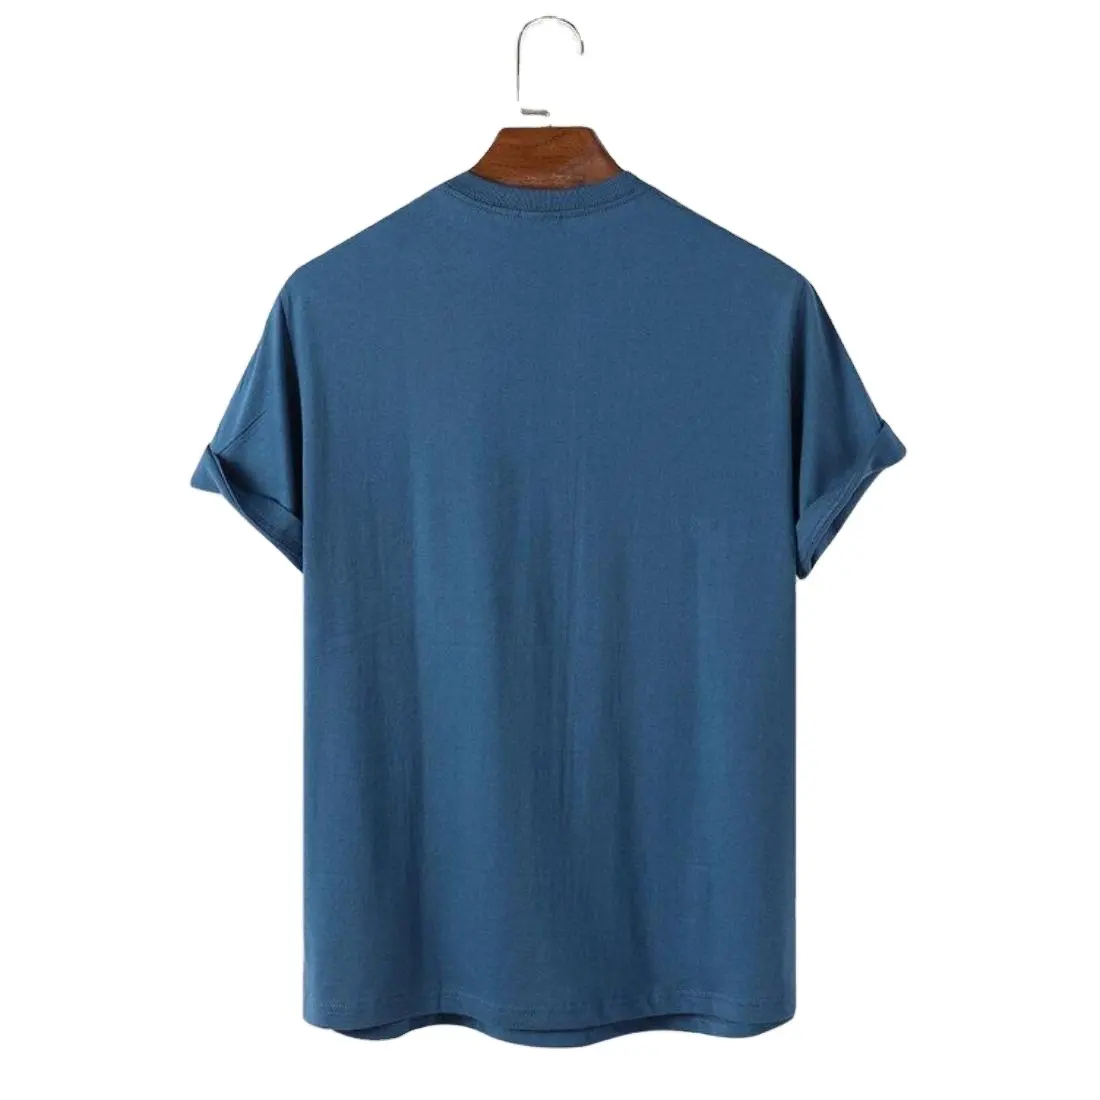 Camiseta de algodón de color azul liso ligero en peso, camiseta de gimnasio muy cómoda y ecológica para hombres y mujeres, artículos de tela